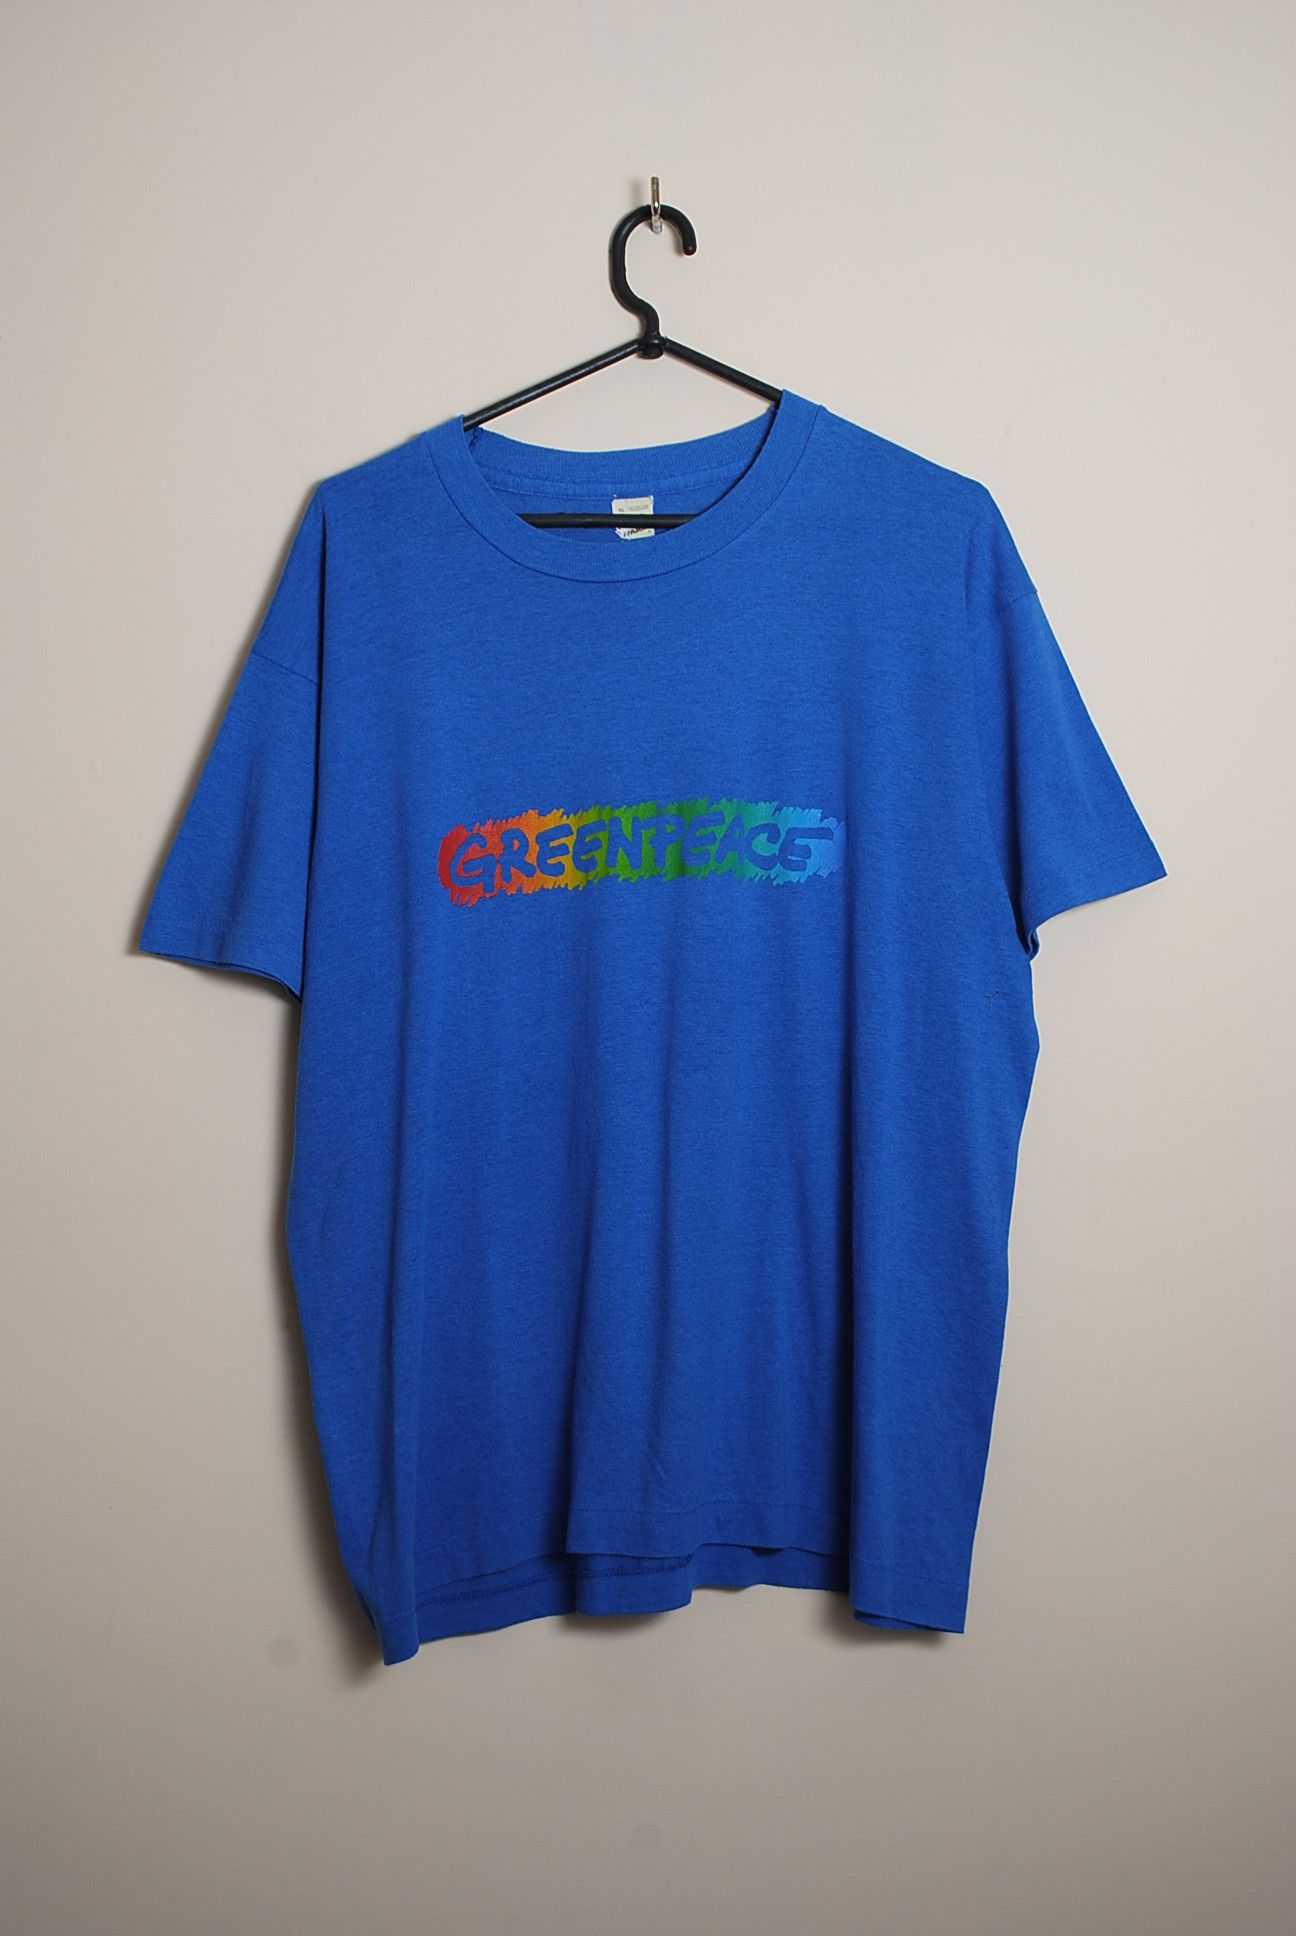 Vintage Greenpeace Vintage 80's T-Shirt Size XL | Grailed